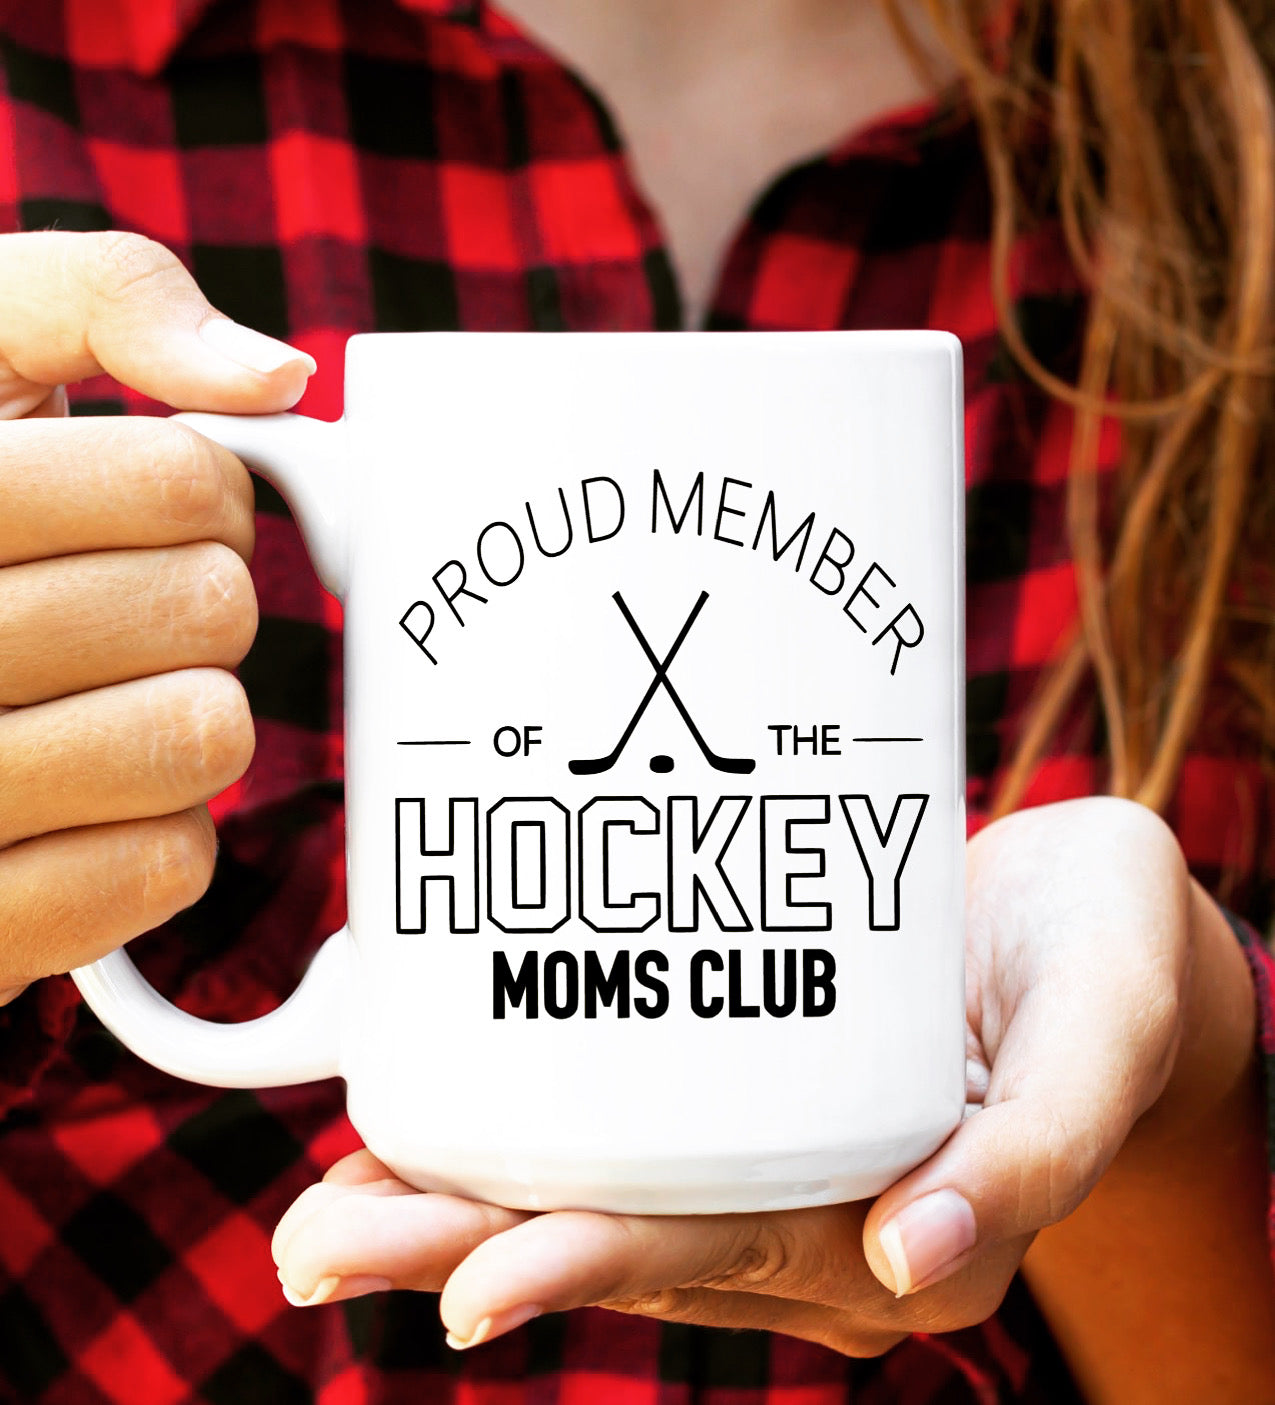 Hockey moms club